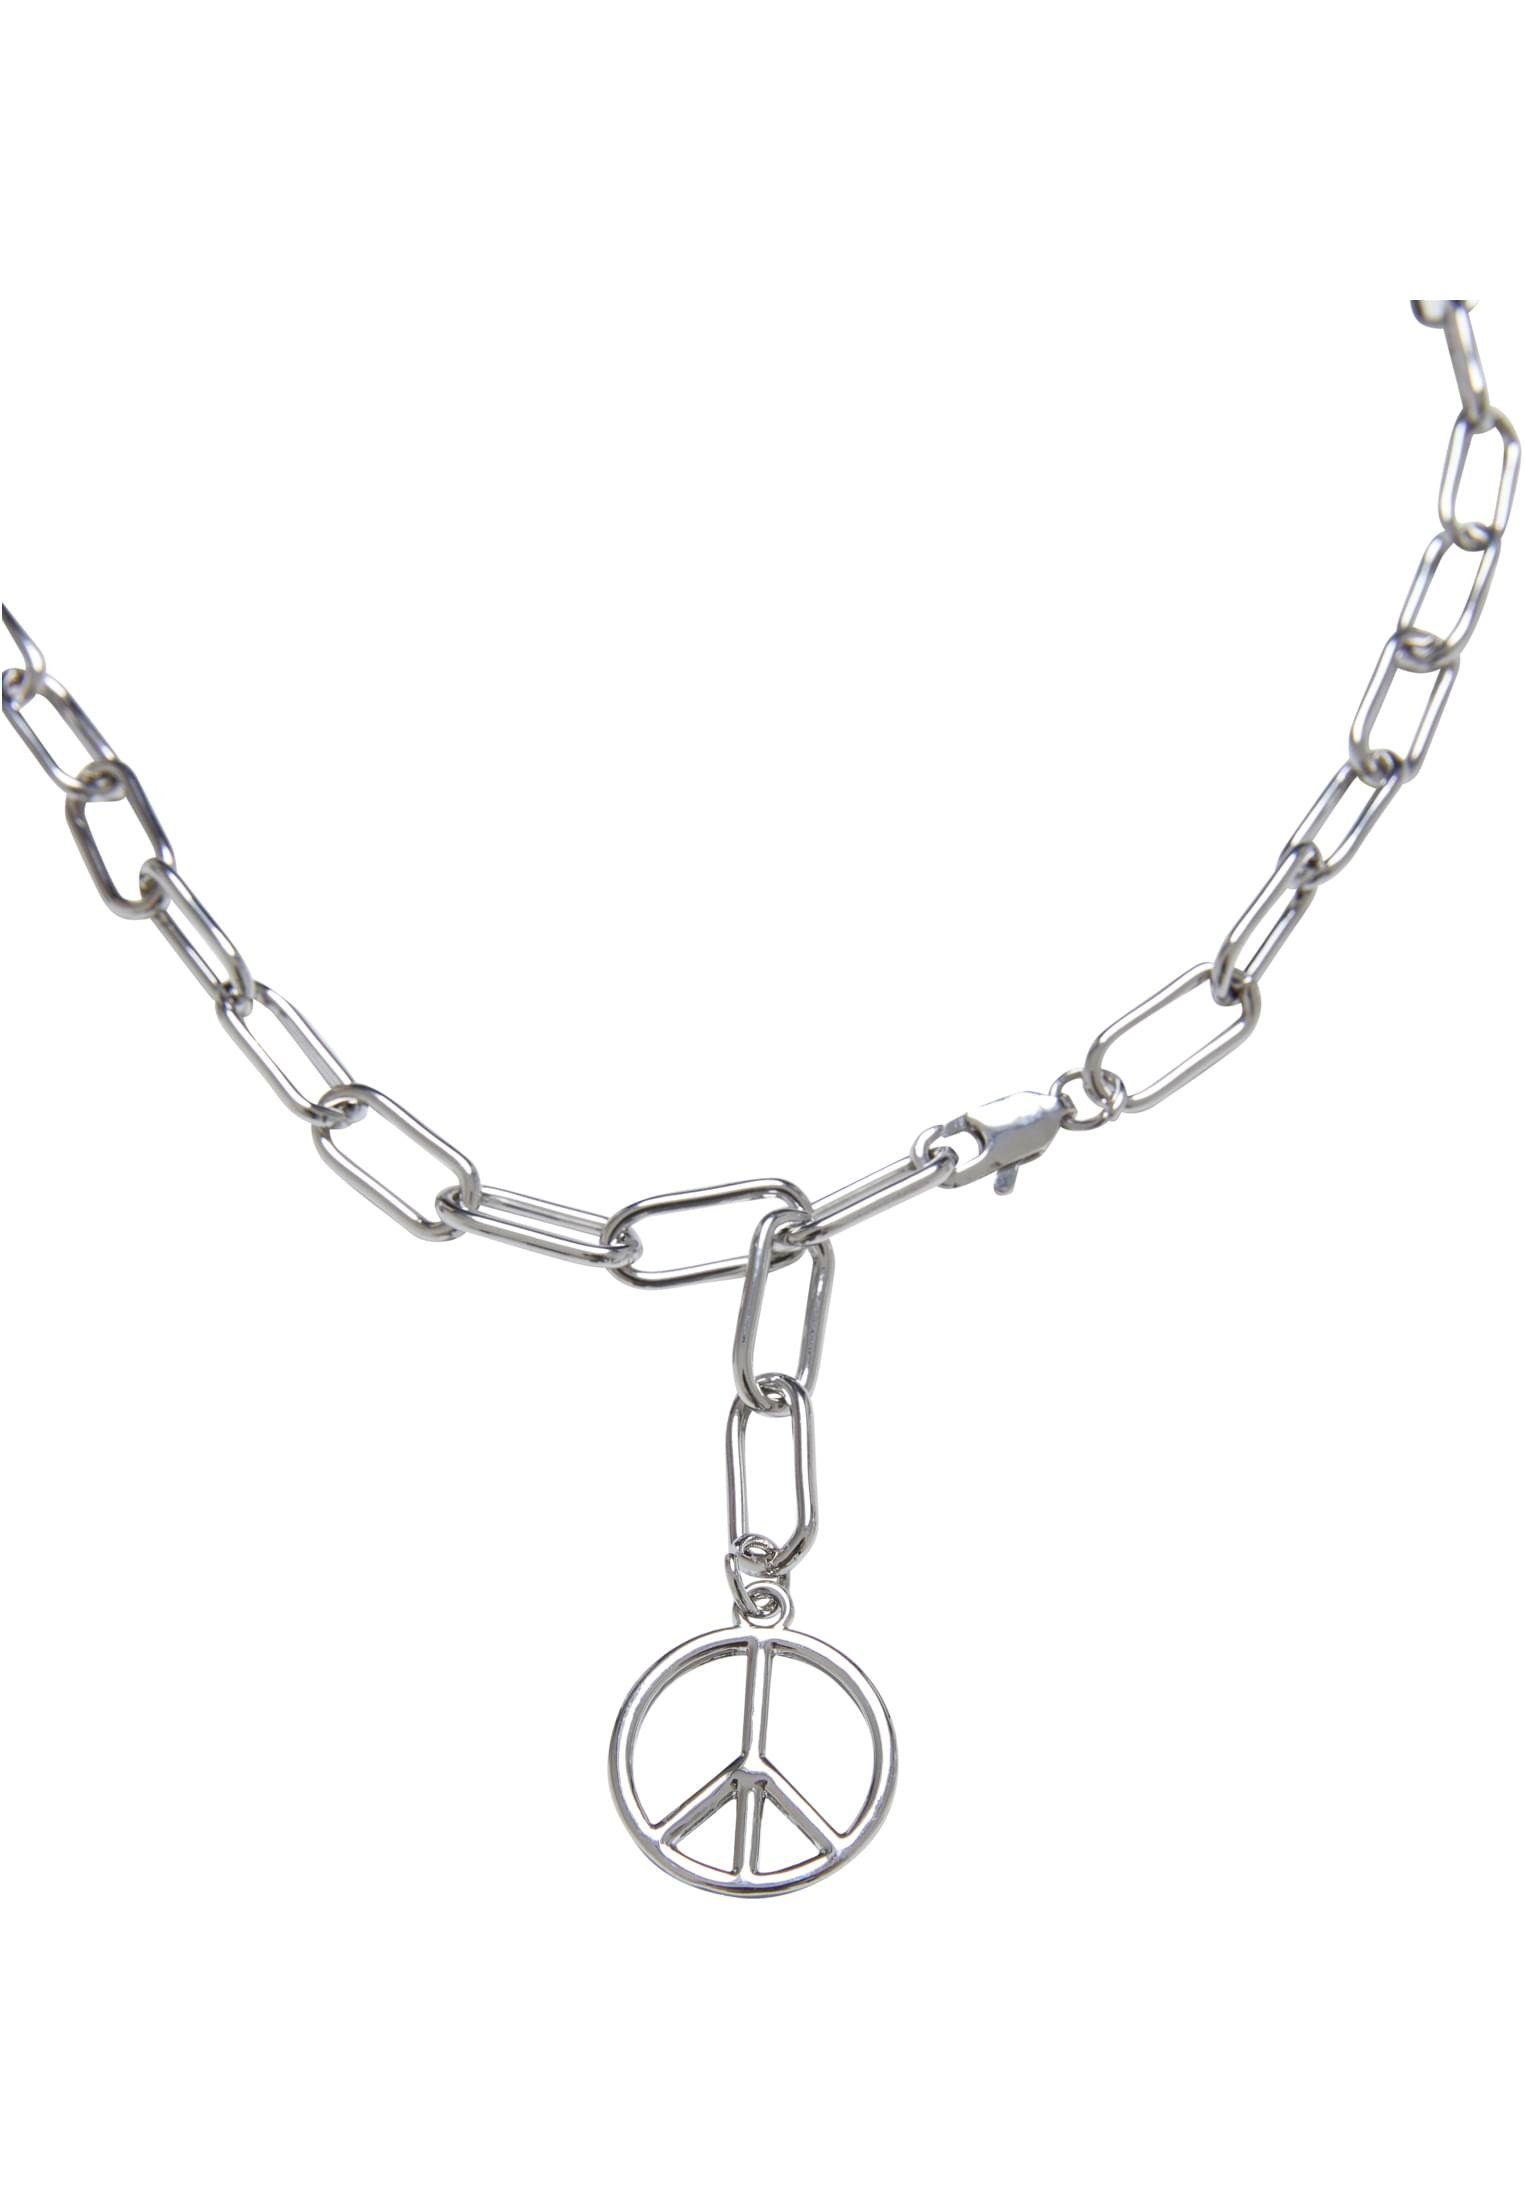 Pendant Necklace Chain CLASSICS URBAN Edelstahlkette Y Peace Accessoires